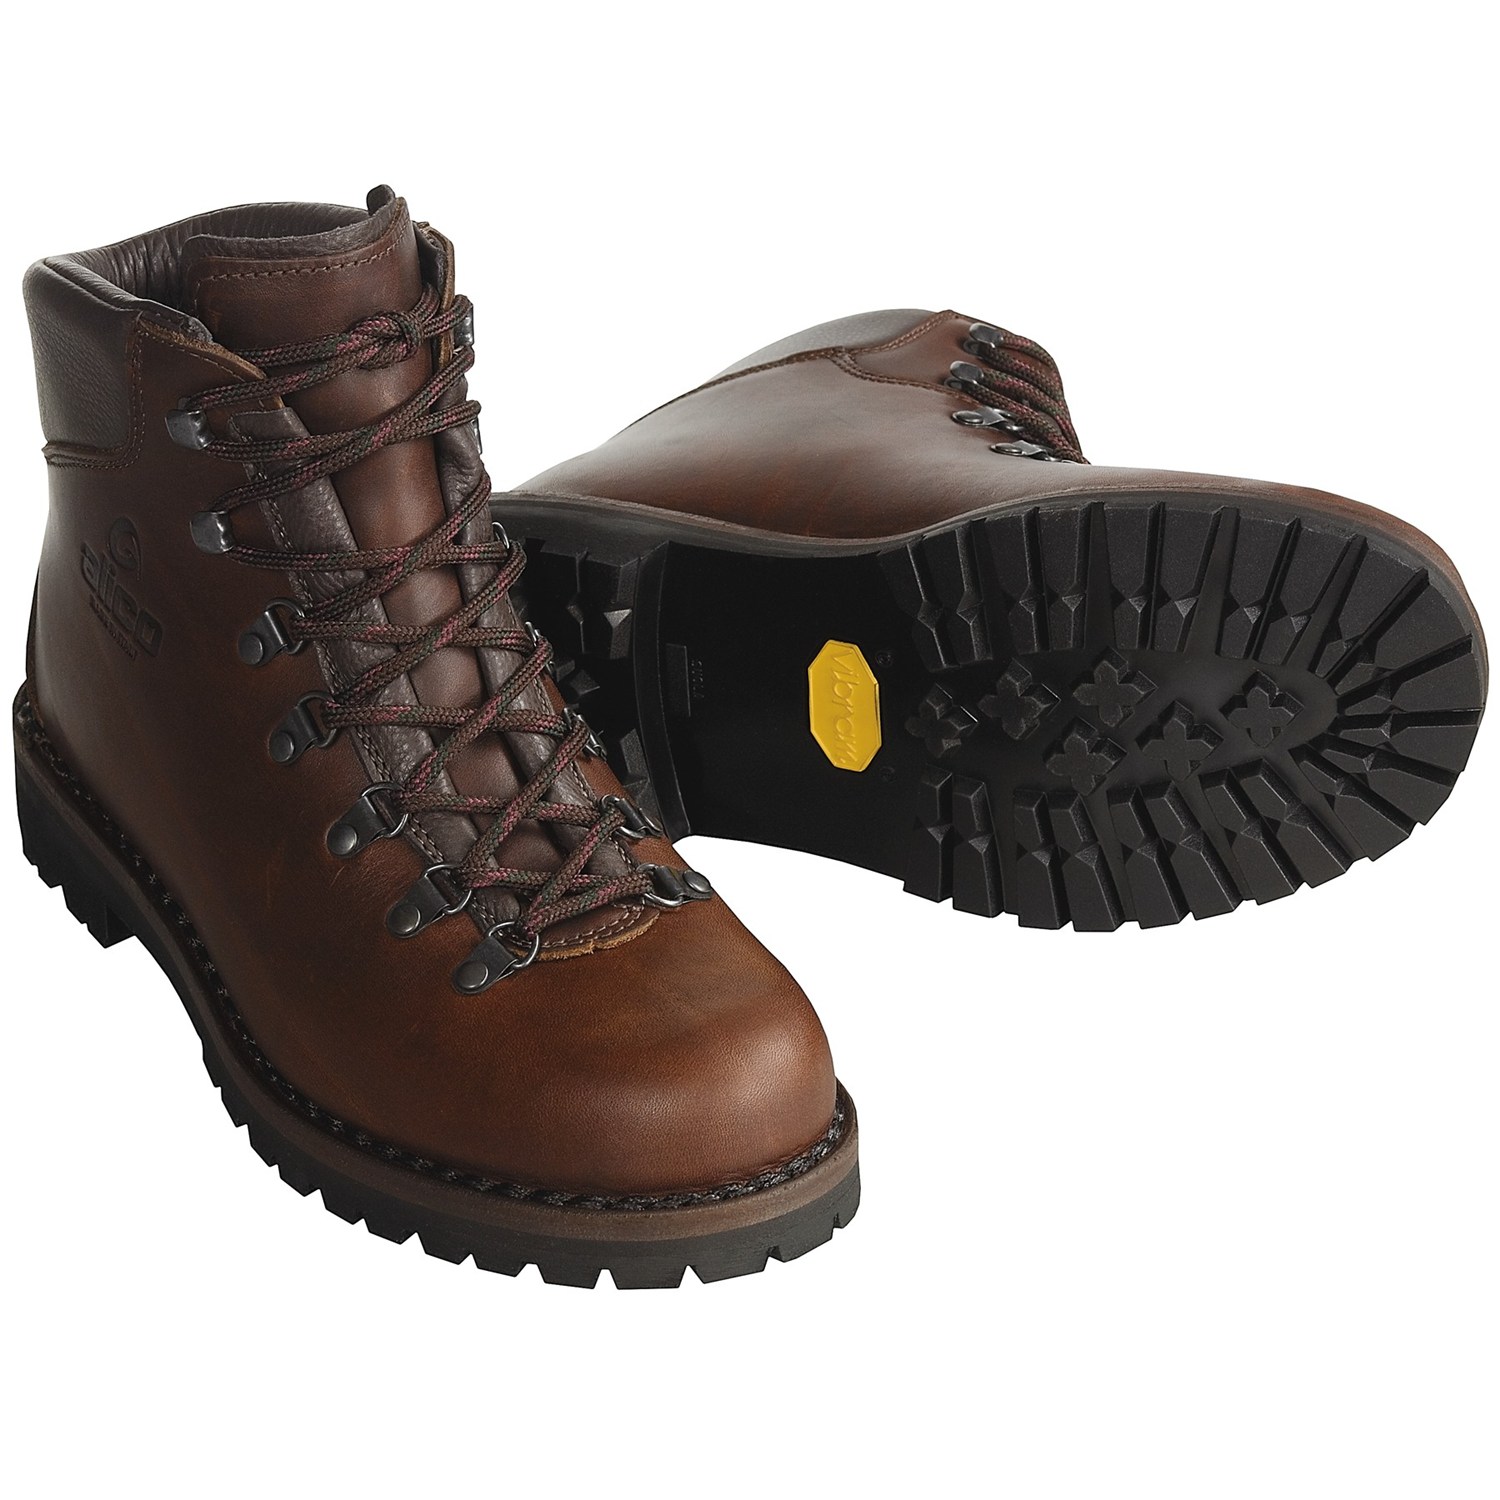 Купить Горные ботинки Пешие прогулки Тахо алико треккинговые ботинкимужские/скальные туфли кожа сделано в Италии Alico Tahoe Hiking Boot винтернет-магазине с Таобао (Taobao) из Китая, низкие цены